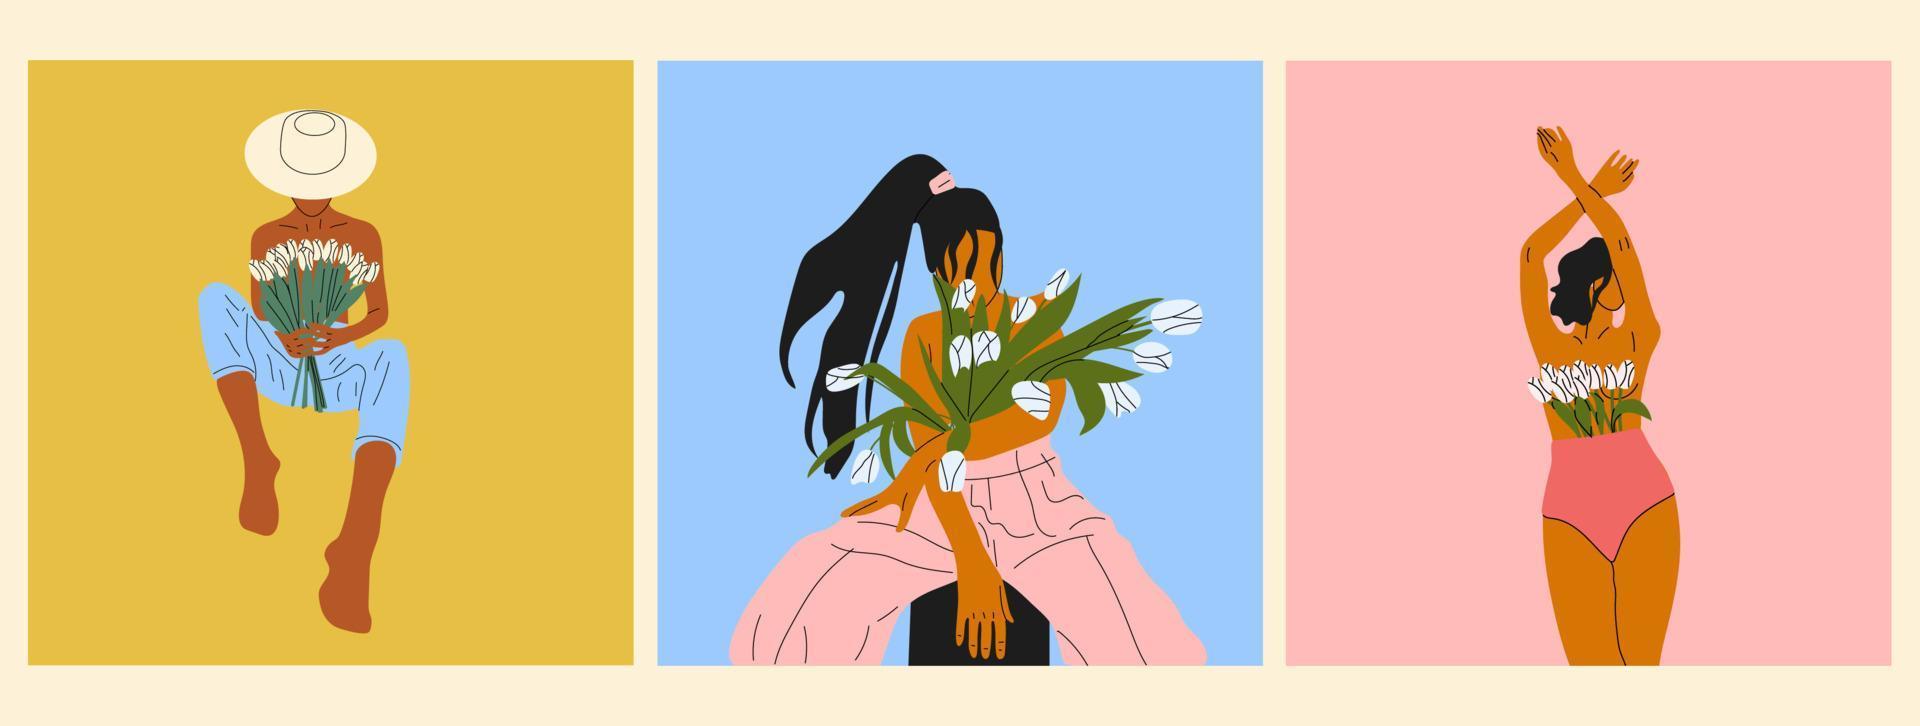 uppsättning av tre kvinna blomning från inom platt vektor illustration. naken kvinnor med blommor växande från bröst. kvinnlighet, feminism, välstånd och själv kärlek begrepp.